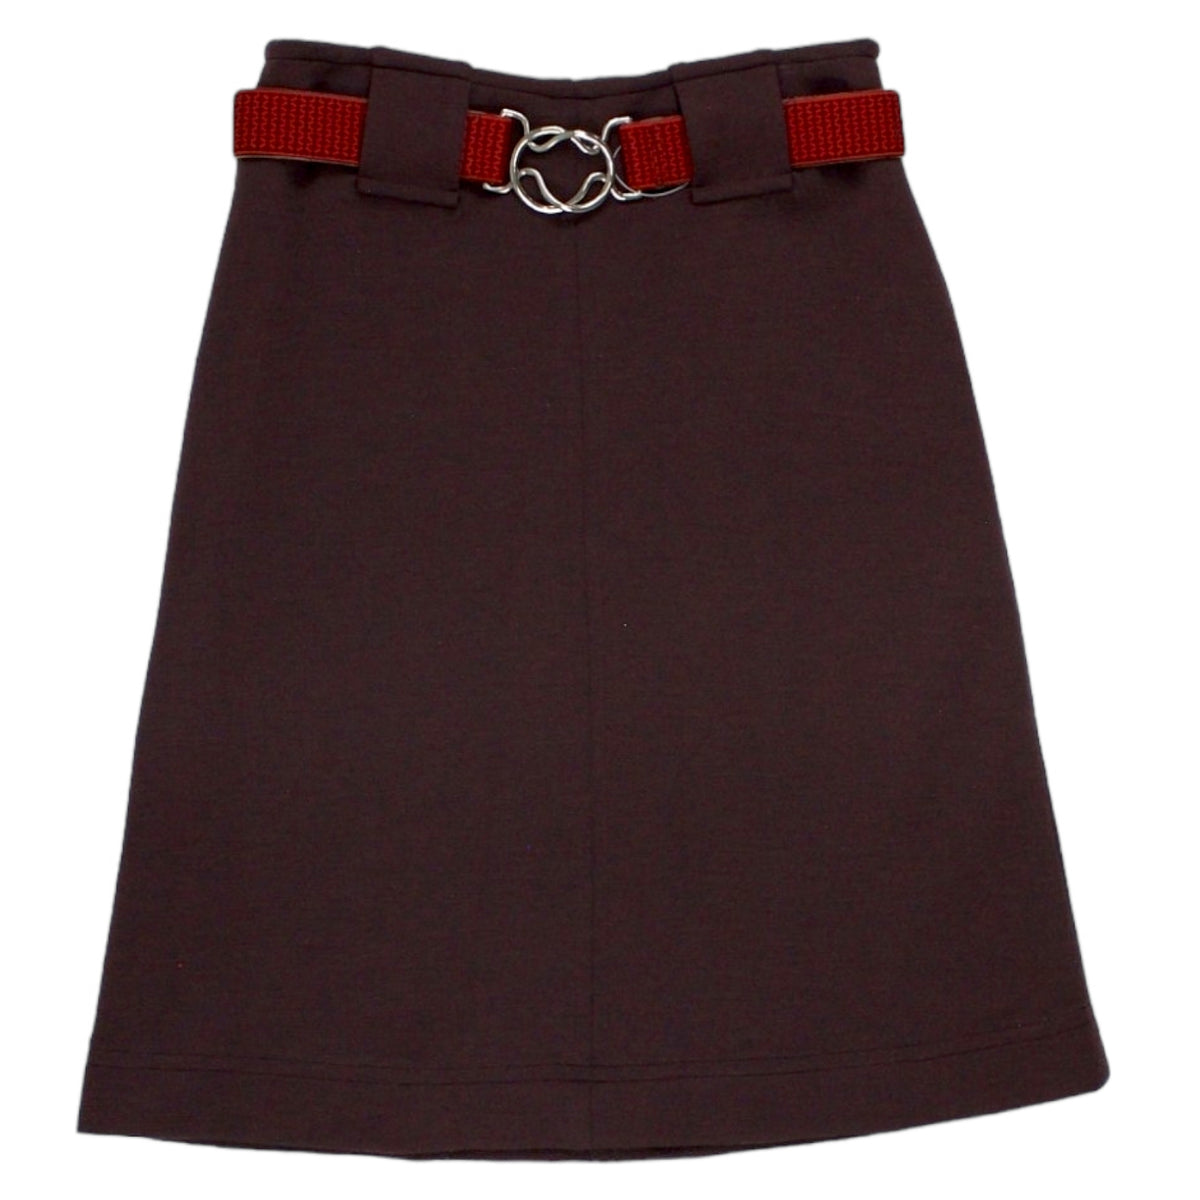 Orla Kiely Maroon Metal Loop Belt Skirt